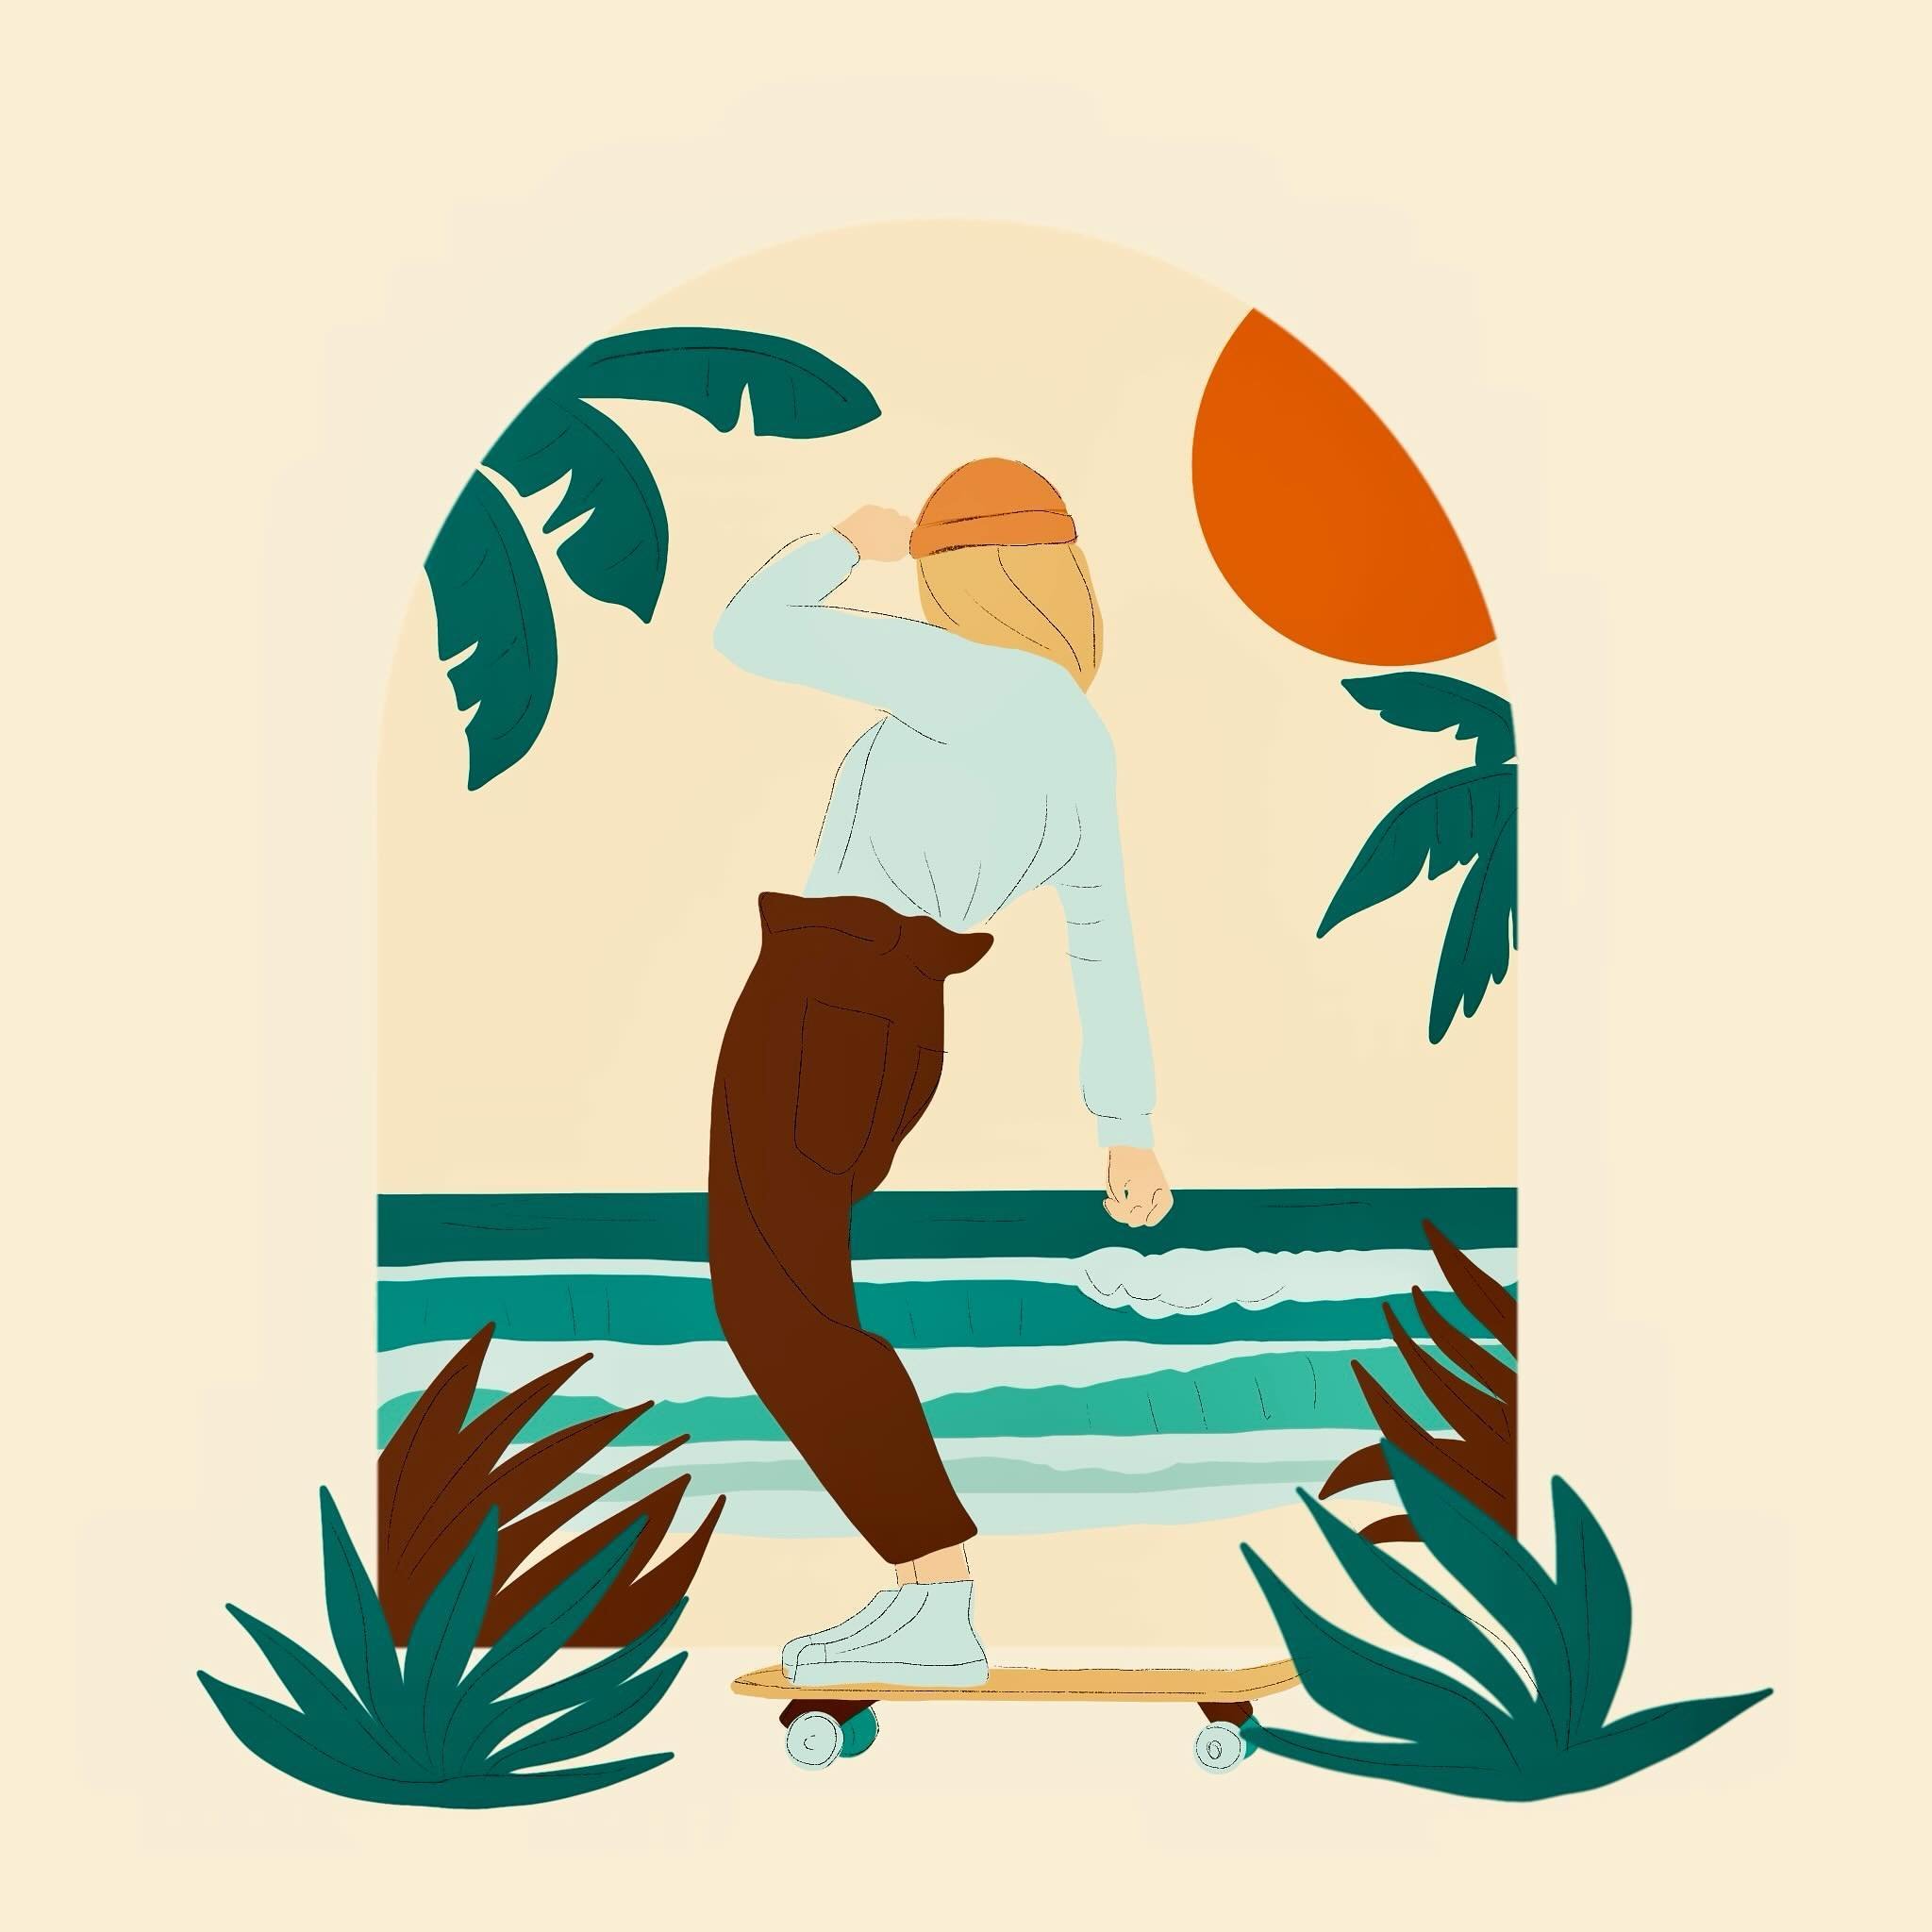 Illustration rapide sur @procreate que j&rsquo;ai toujours sous la main. ✍️ La mer, le skate ✨ tout va bien ! 

#illustratricenantaise #illustratrice #luciegautier #illustration #skate #nantes #surf #artwork #skateboard #surfskate